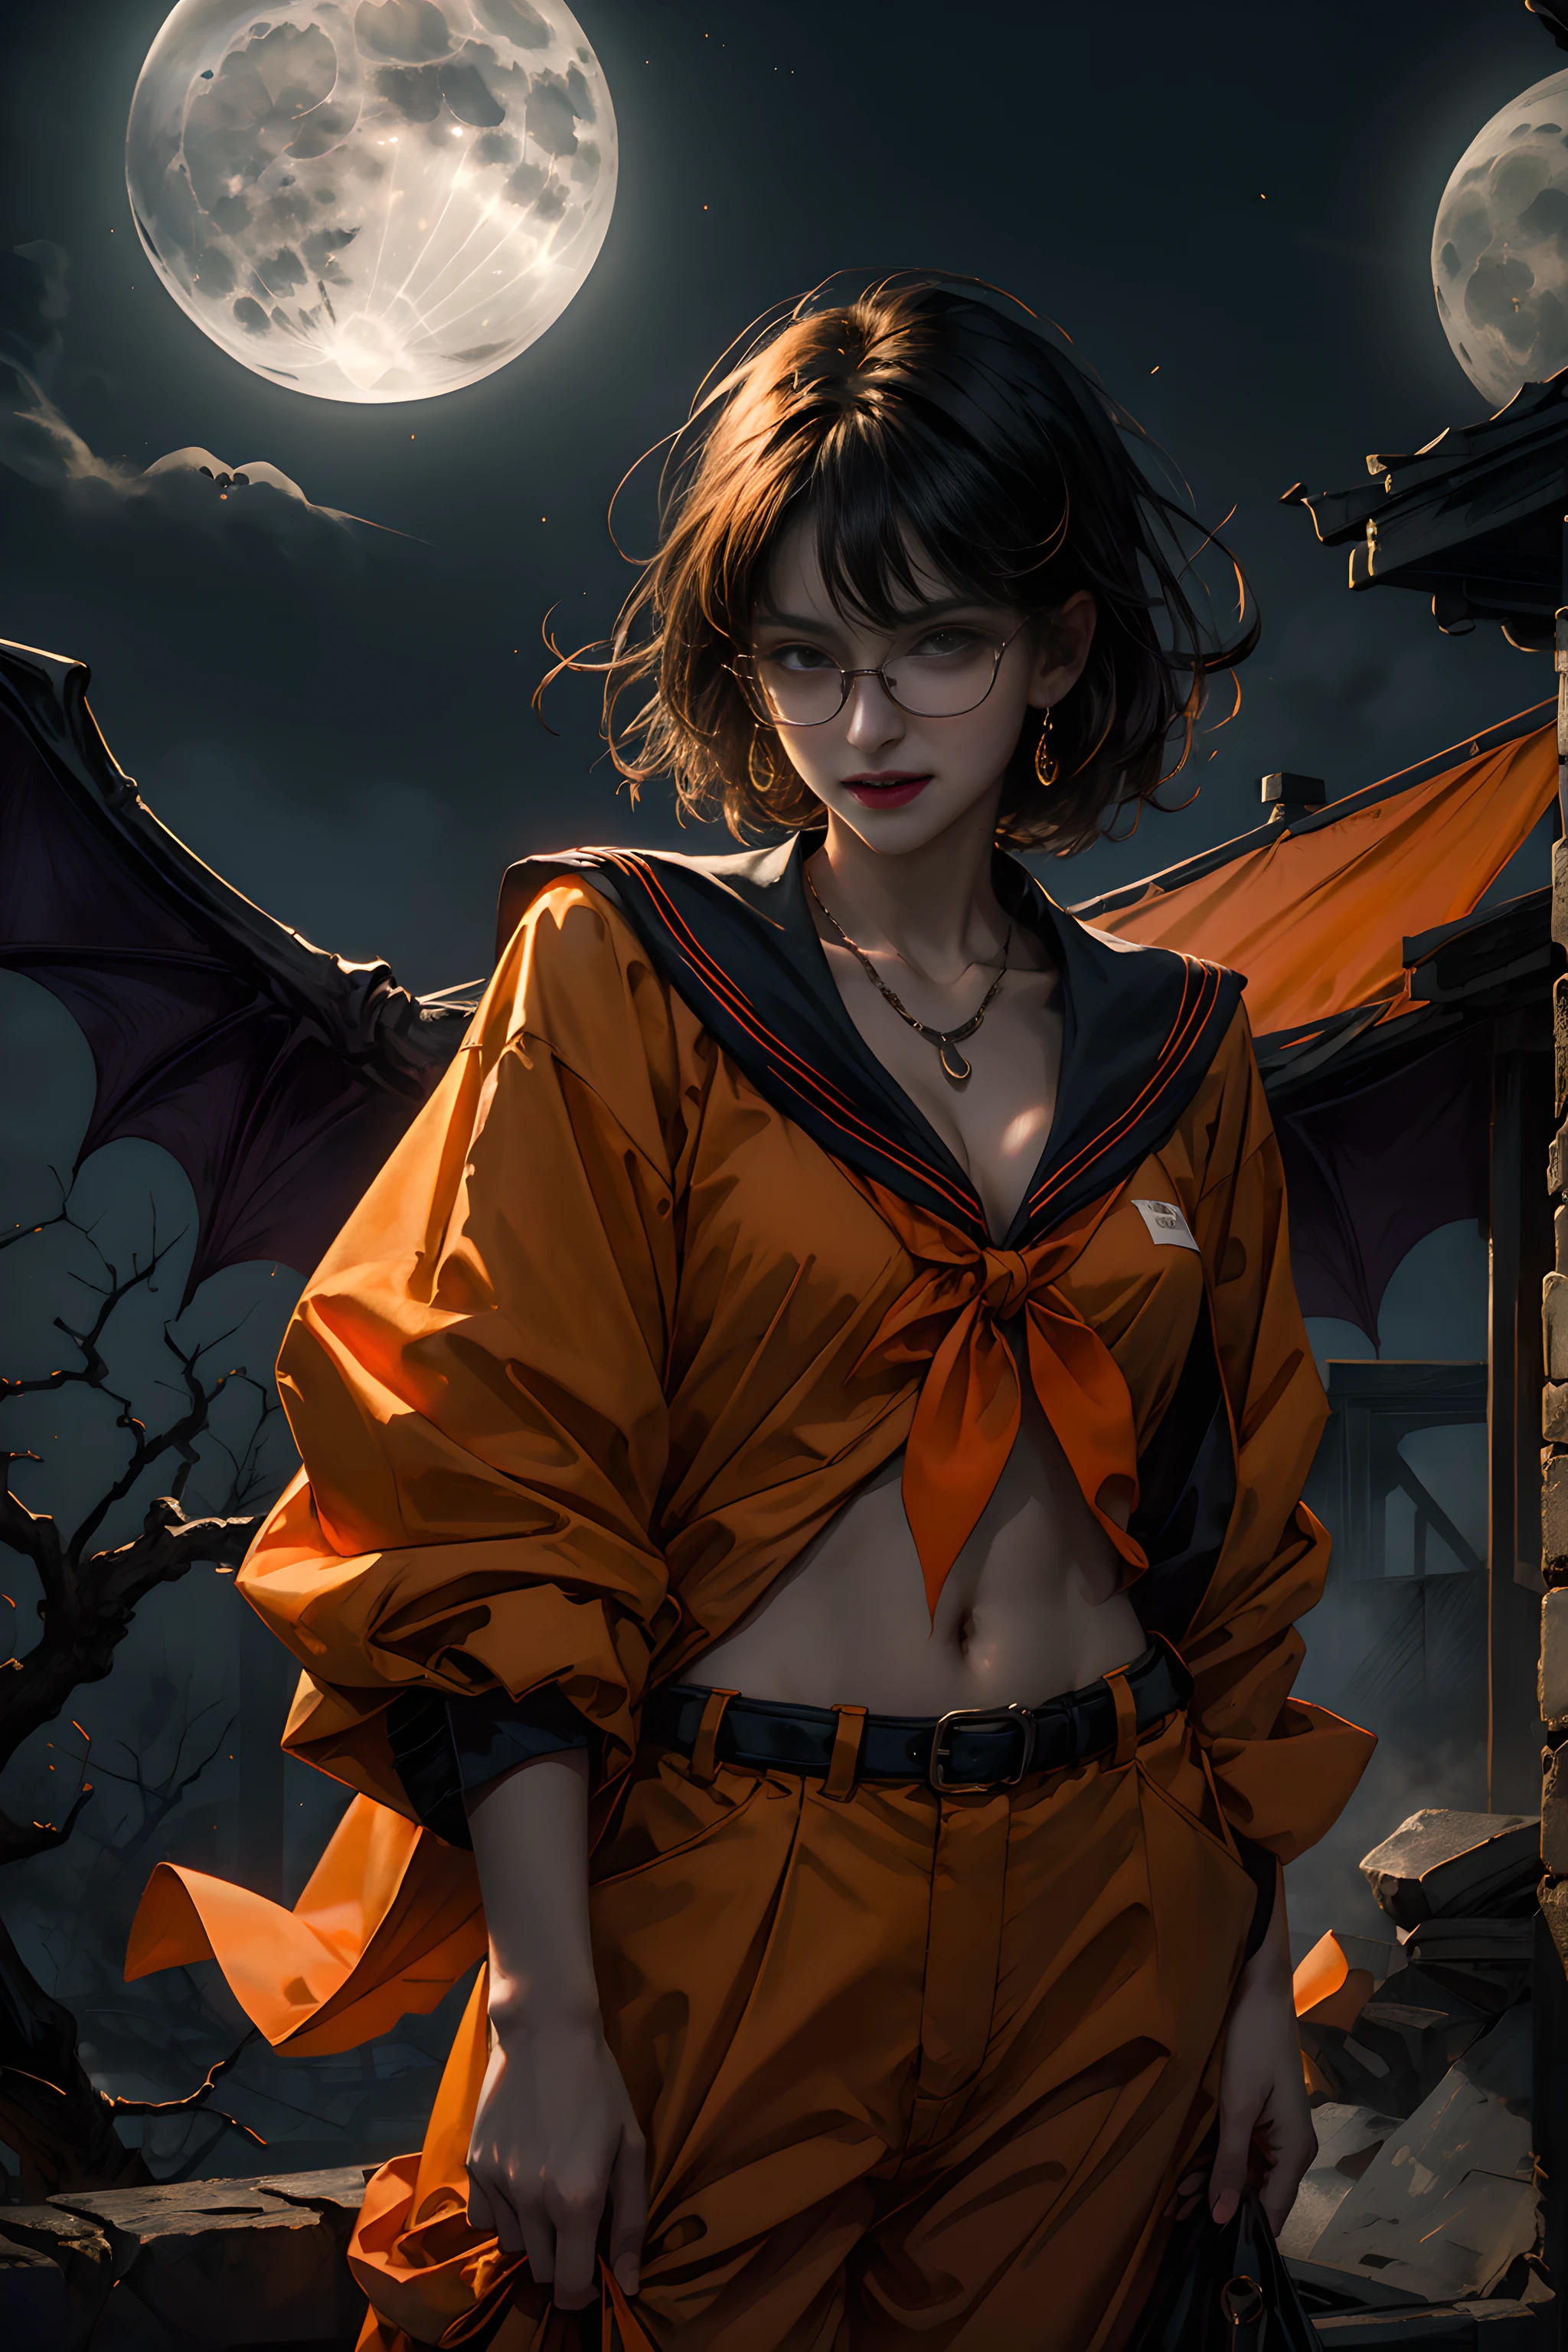 (Halloween-Vampir-Thema:1.3), Eldritch Monster, Oberkörperfoto eines (elegant) Vampirfrau steht auf dem Dach unter rotem Vollmond, Vampire Fangs, tusk, Zeig mir deine Reißzähne, Ein orangefarbenes Halloweenkostüm tragen, (Fusion aus orangefarbenem Matrosenanzug und Arbeitshose:1.3), (Kleidung mit orangefarbenem Motiv:1.3), trägt eine Brille, geschlossener Mund,(Lächelnde Augen:0.2),Betrachter betrachten, (Tischplatte, beste Qualität:1.2), absurderes, Perfektes Kunstwerk, Trends auf Artstation, sehr detailliert, empfindlich, (Realistisch, Photorealsitic:1.37), Porträt, Licht im Gesicht, detailliertes Gesicht, Nacht, Nacht situation, Nacht time, (Mondlicht:1.3), Tentakeln zappeln、Realistisch, hyperscharf, ultra-detailliert, kurzes Bob-Haar, ppixie haar, geteilter Pony,